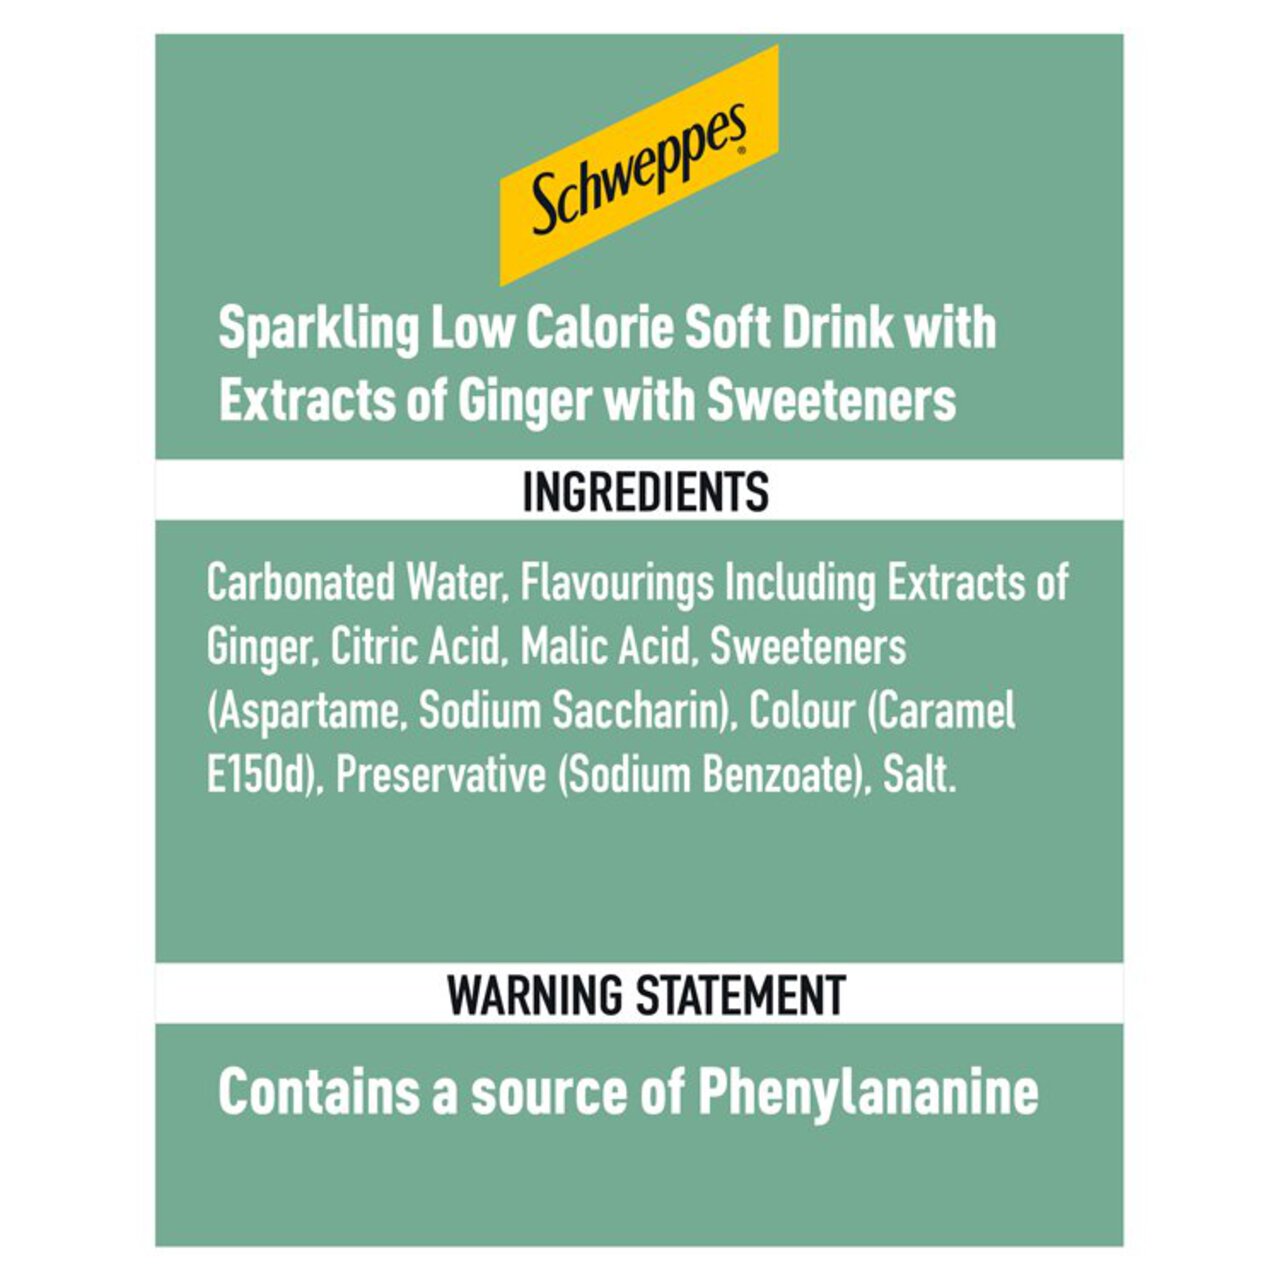 Schweppes Slimline Ginger Ale 1l